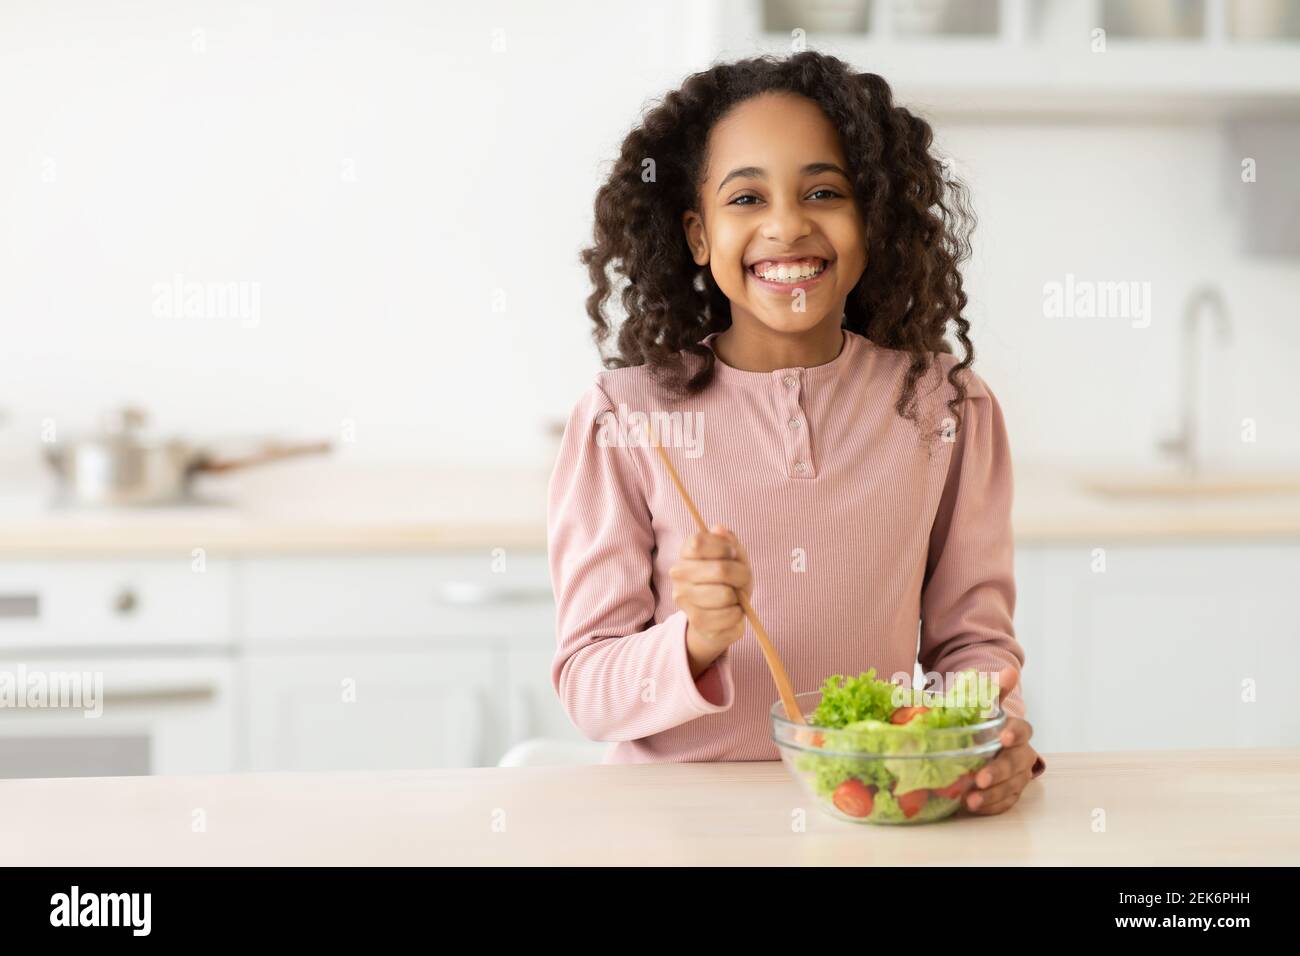 https://c8.alamy.com/comp/2EK6PHH/cheerful-african-american-girl-preparing-healthy-salad-2EK6PHH.jpg